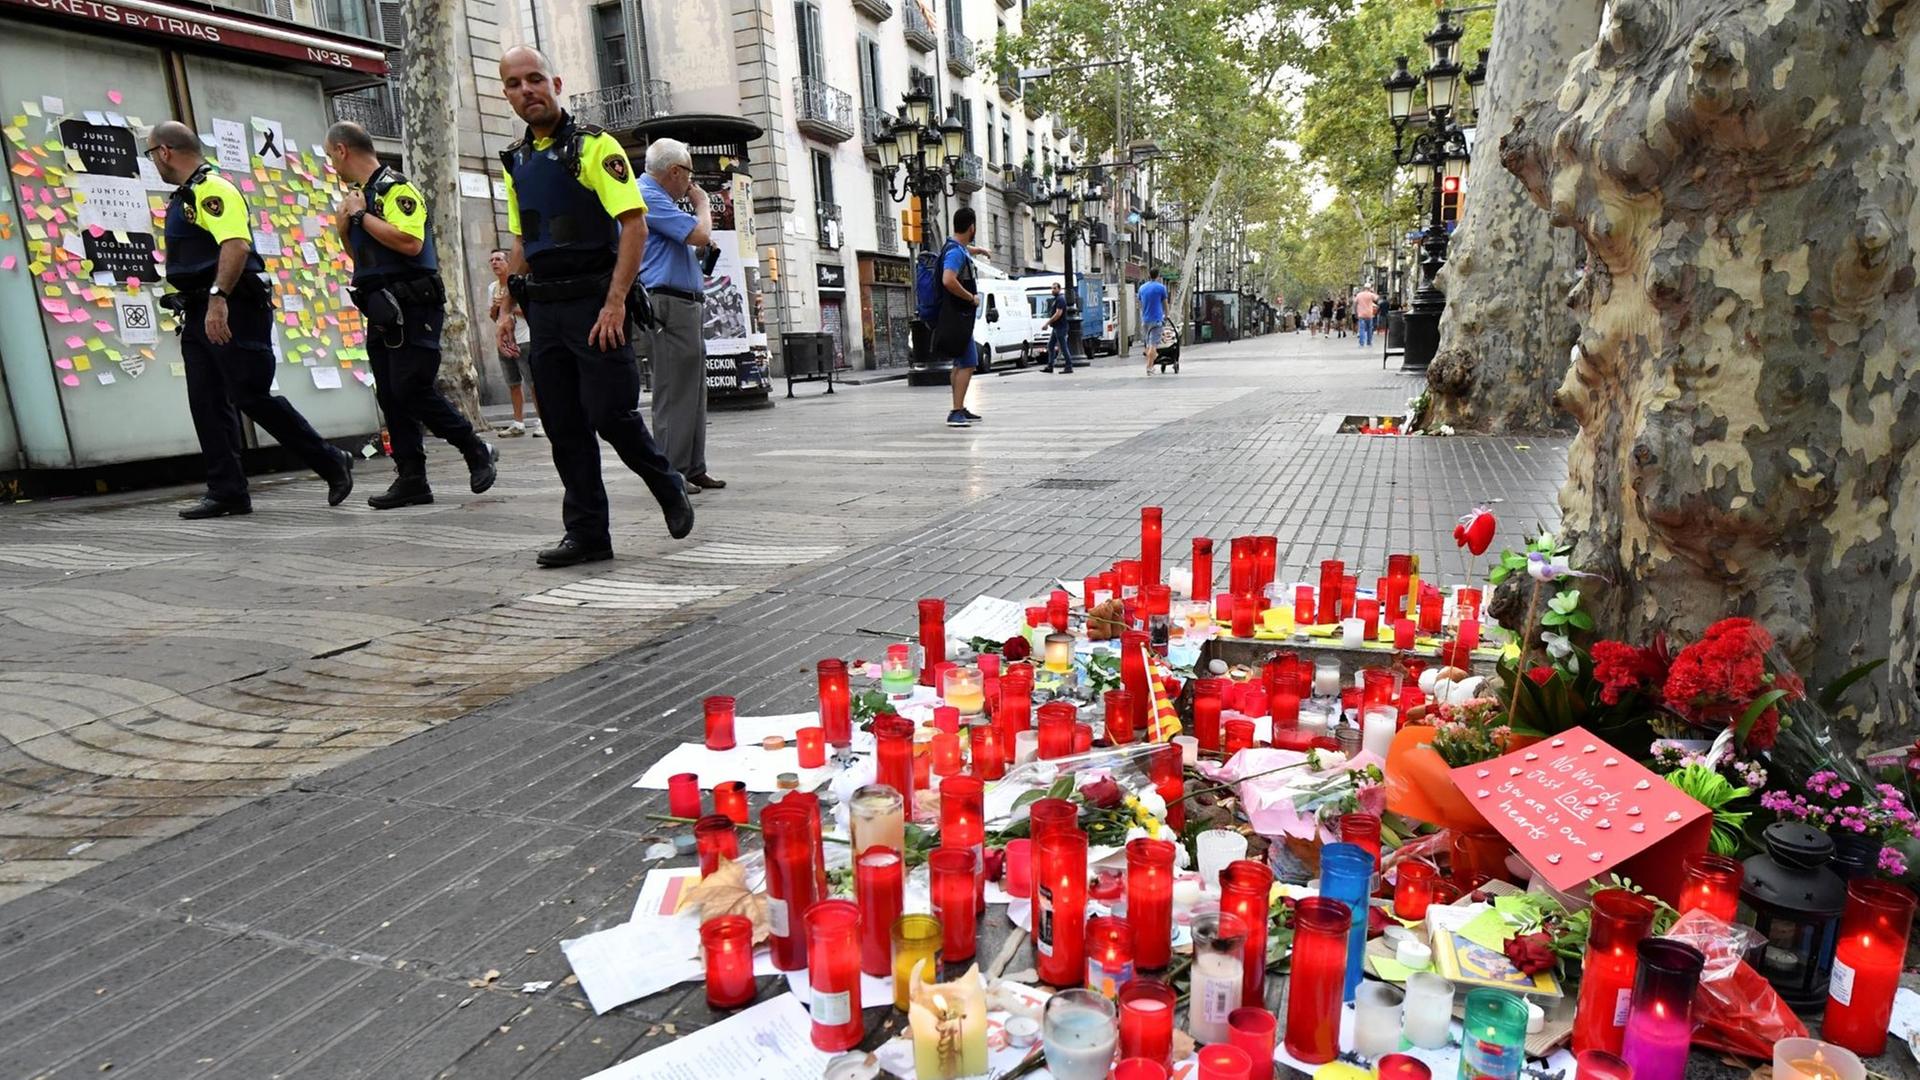 Polizisten patrouillieren entlang des Boulevards Las Ramblas in Barcelona. Auf der Straße stehen Kerzen, die an die Opfer des Terroranschlags erinnern.